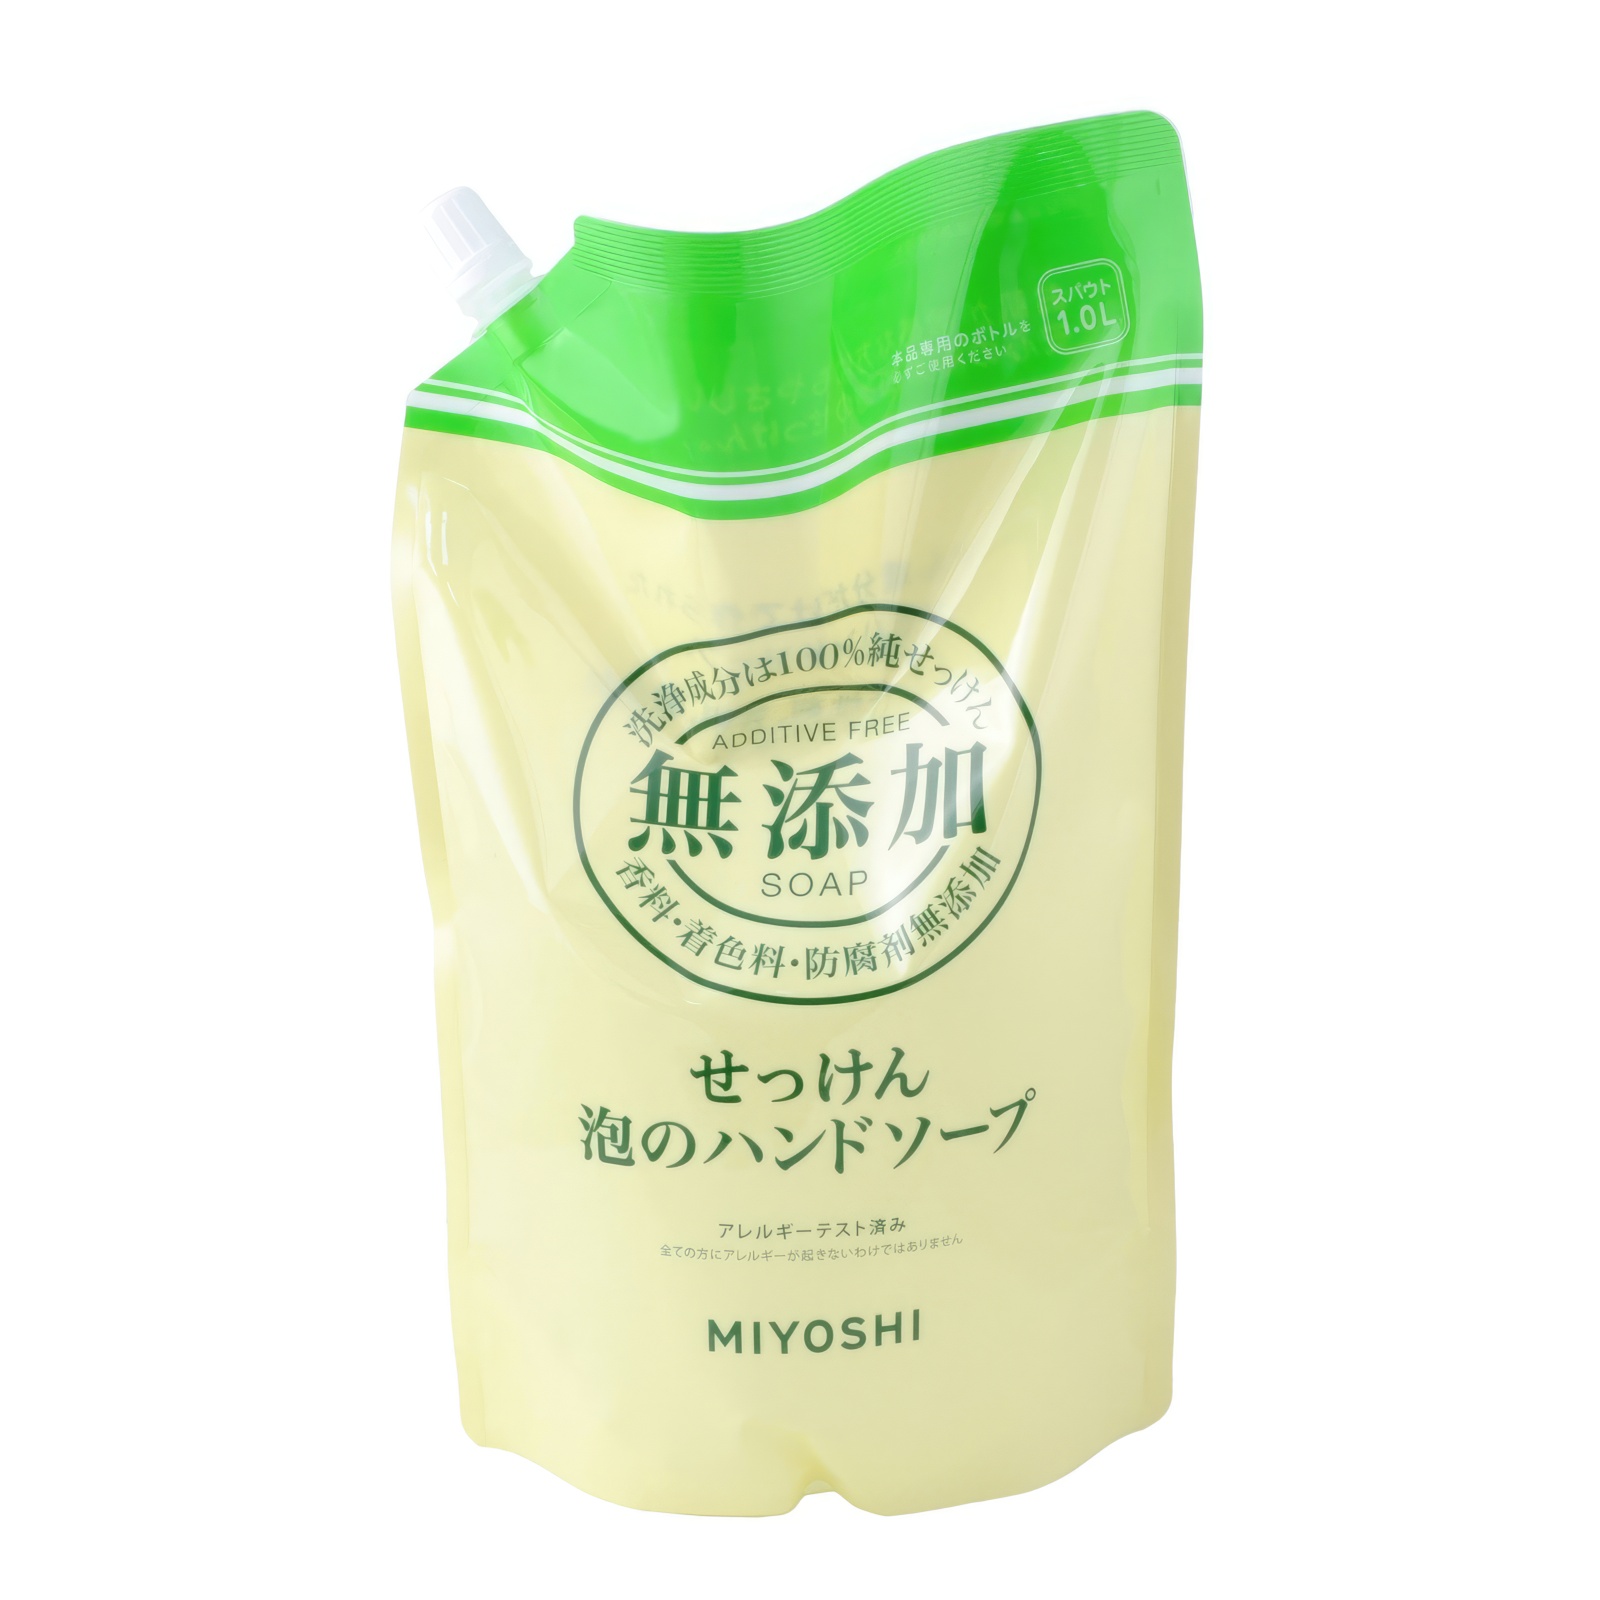 Жидкое мыло MIYOSHI Натуральное пенящееся эко для рук дойпак 1 л натуральное пенящееся жидкое мыло miyoshi эко c ароматом ов 600 мл